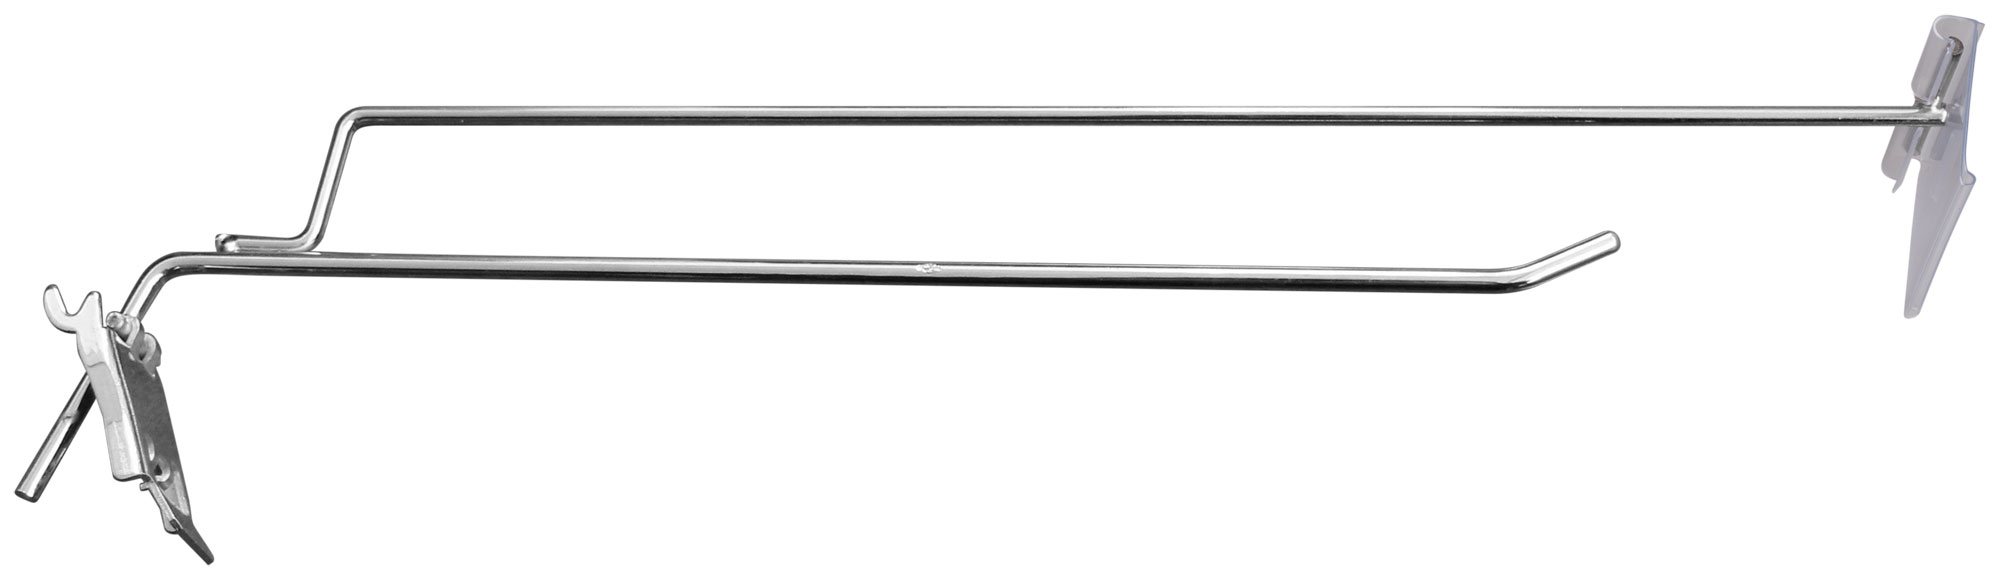 Крючок хромированный с защелкой, длина 330 мм